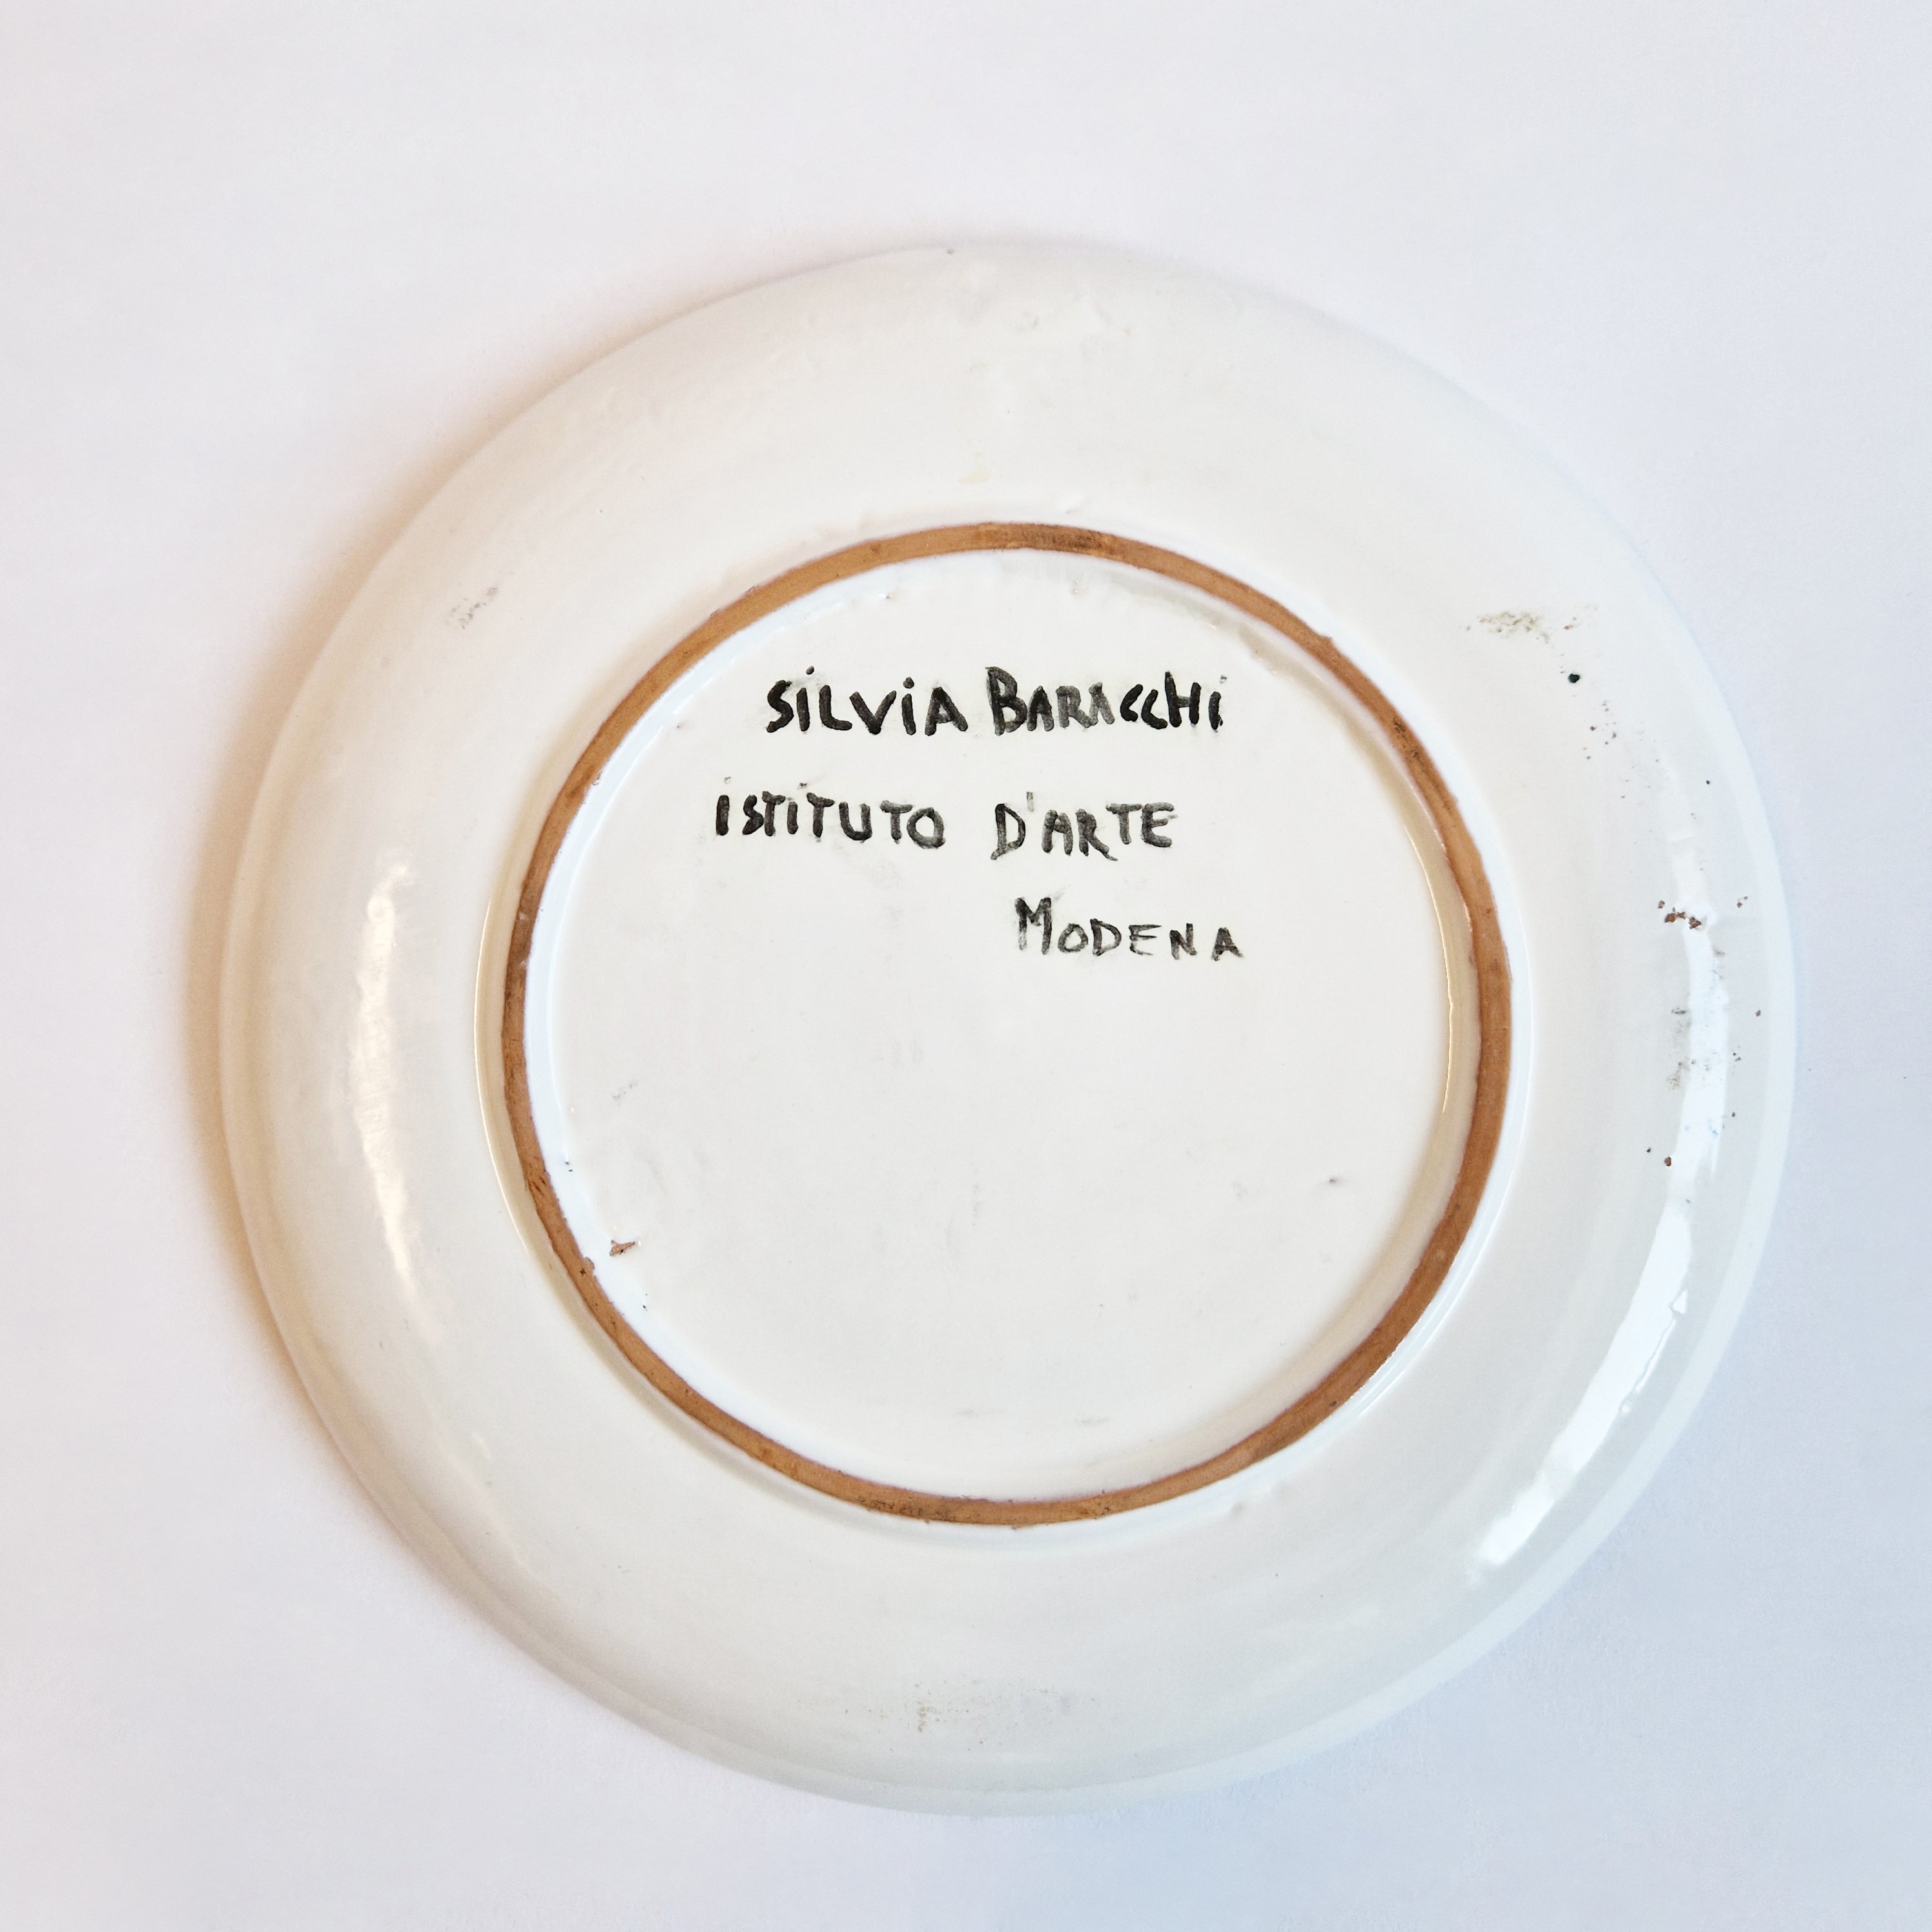 Vintage Italian patterned ceramic plate